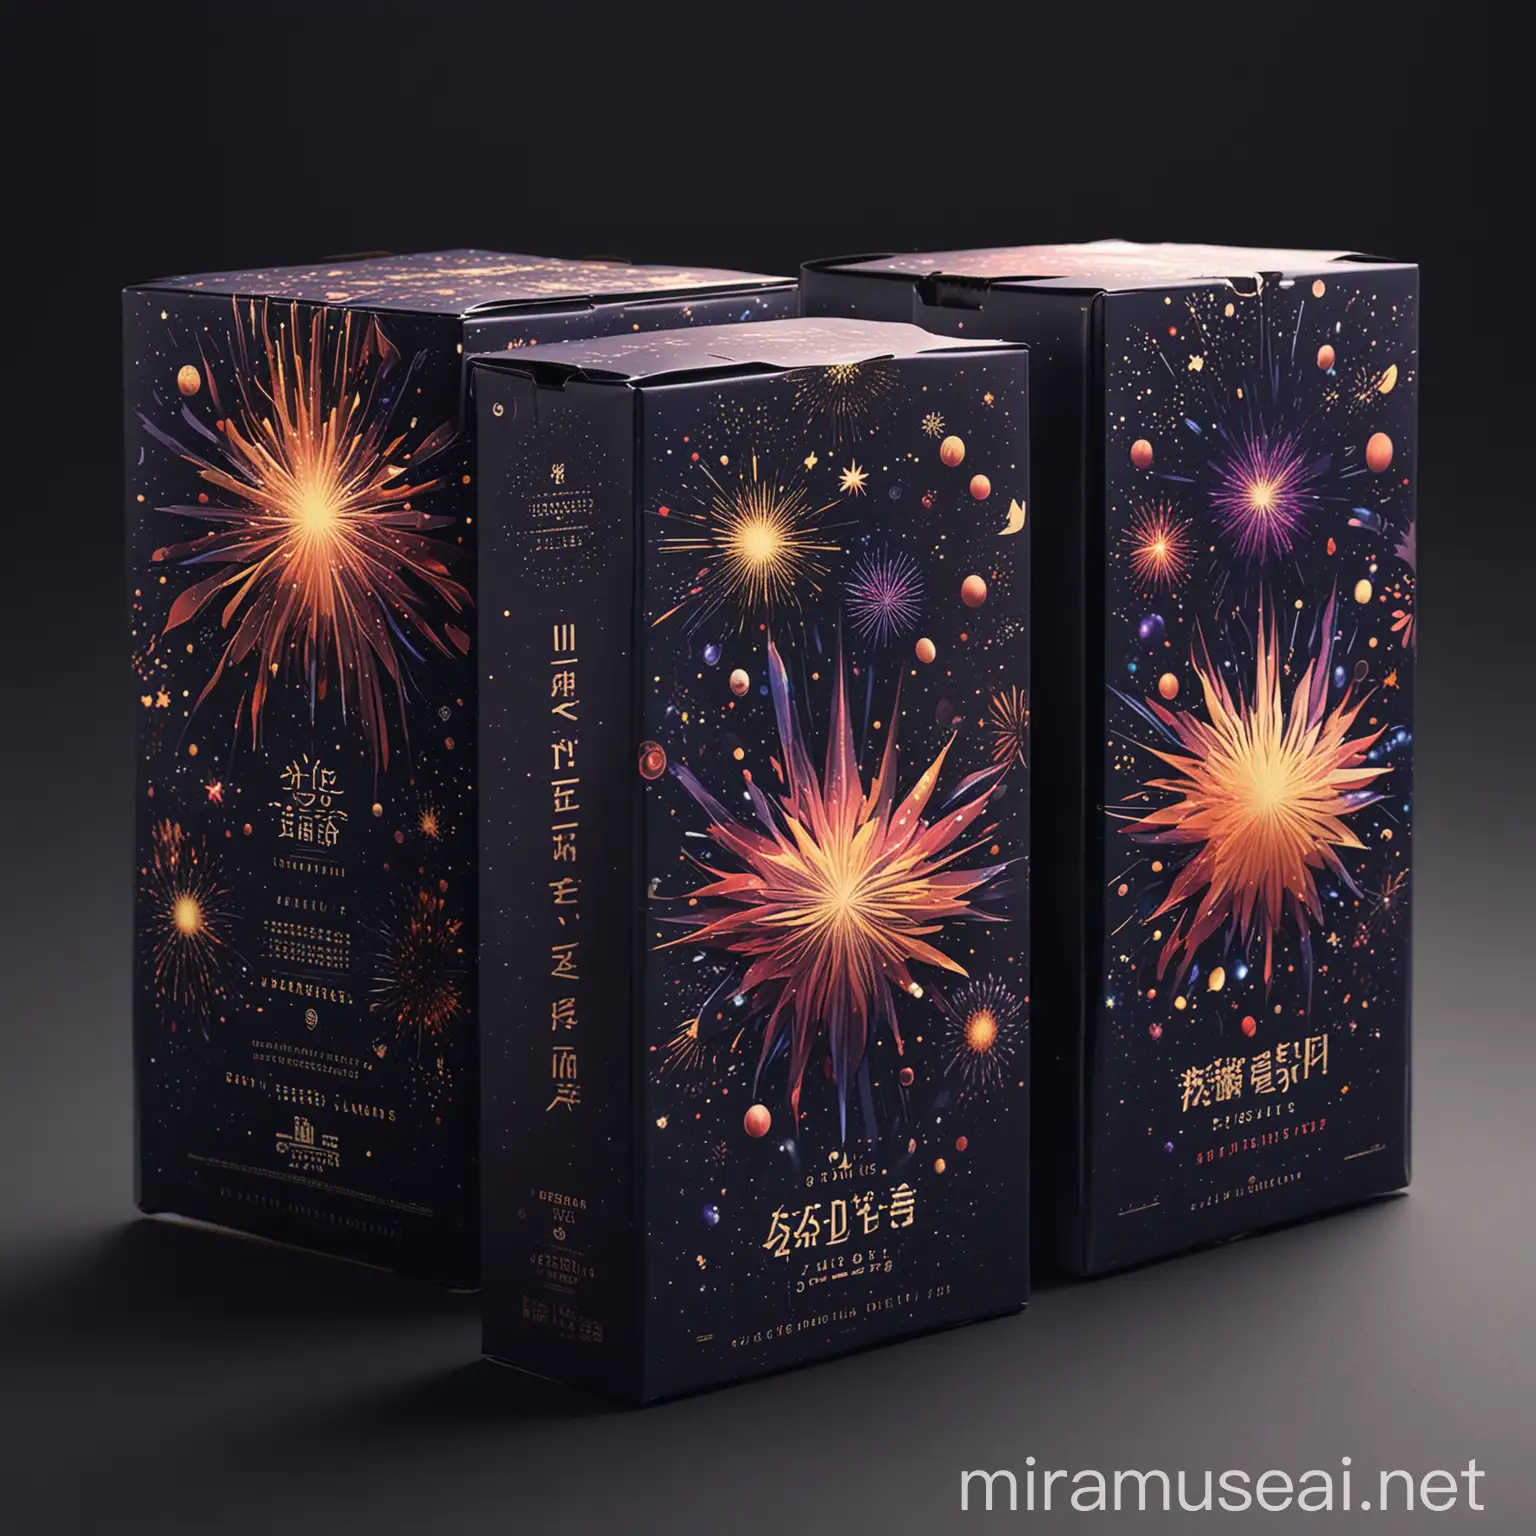 Cosmic Galactic Wind Fireworks Packaging Design Series